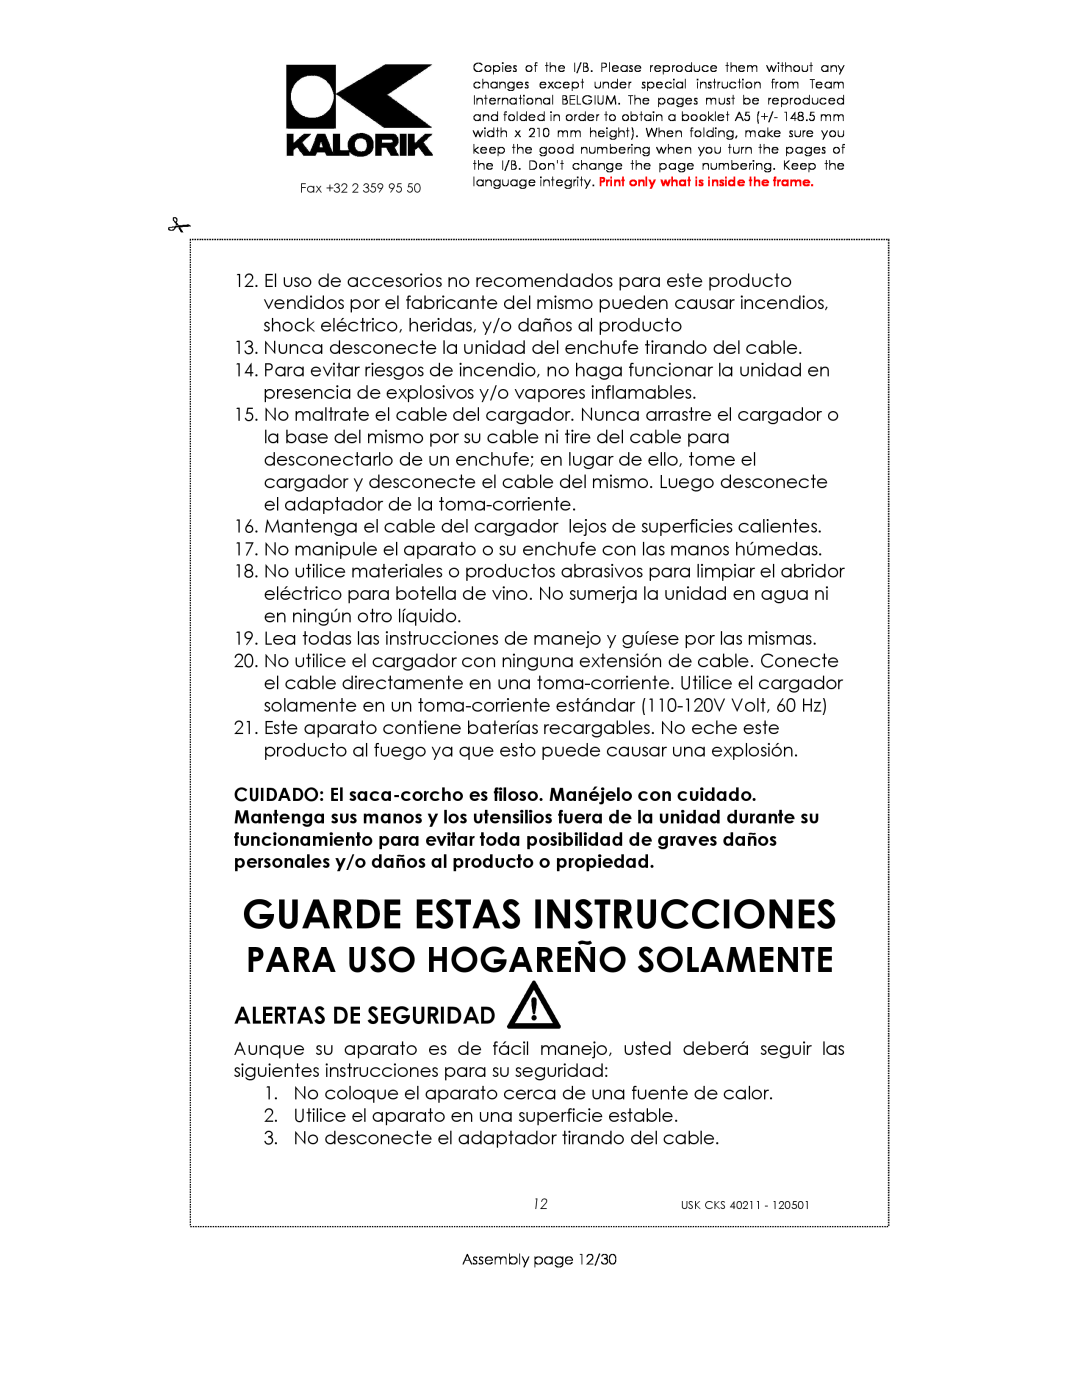 Kalorik CKS 40211 manual Guarde Estas Instrucciones, Alertas De Seguridad, Para Uso Hogareño Solamente 